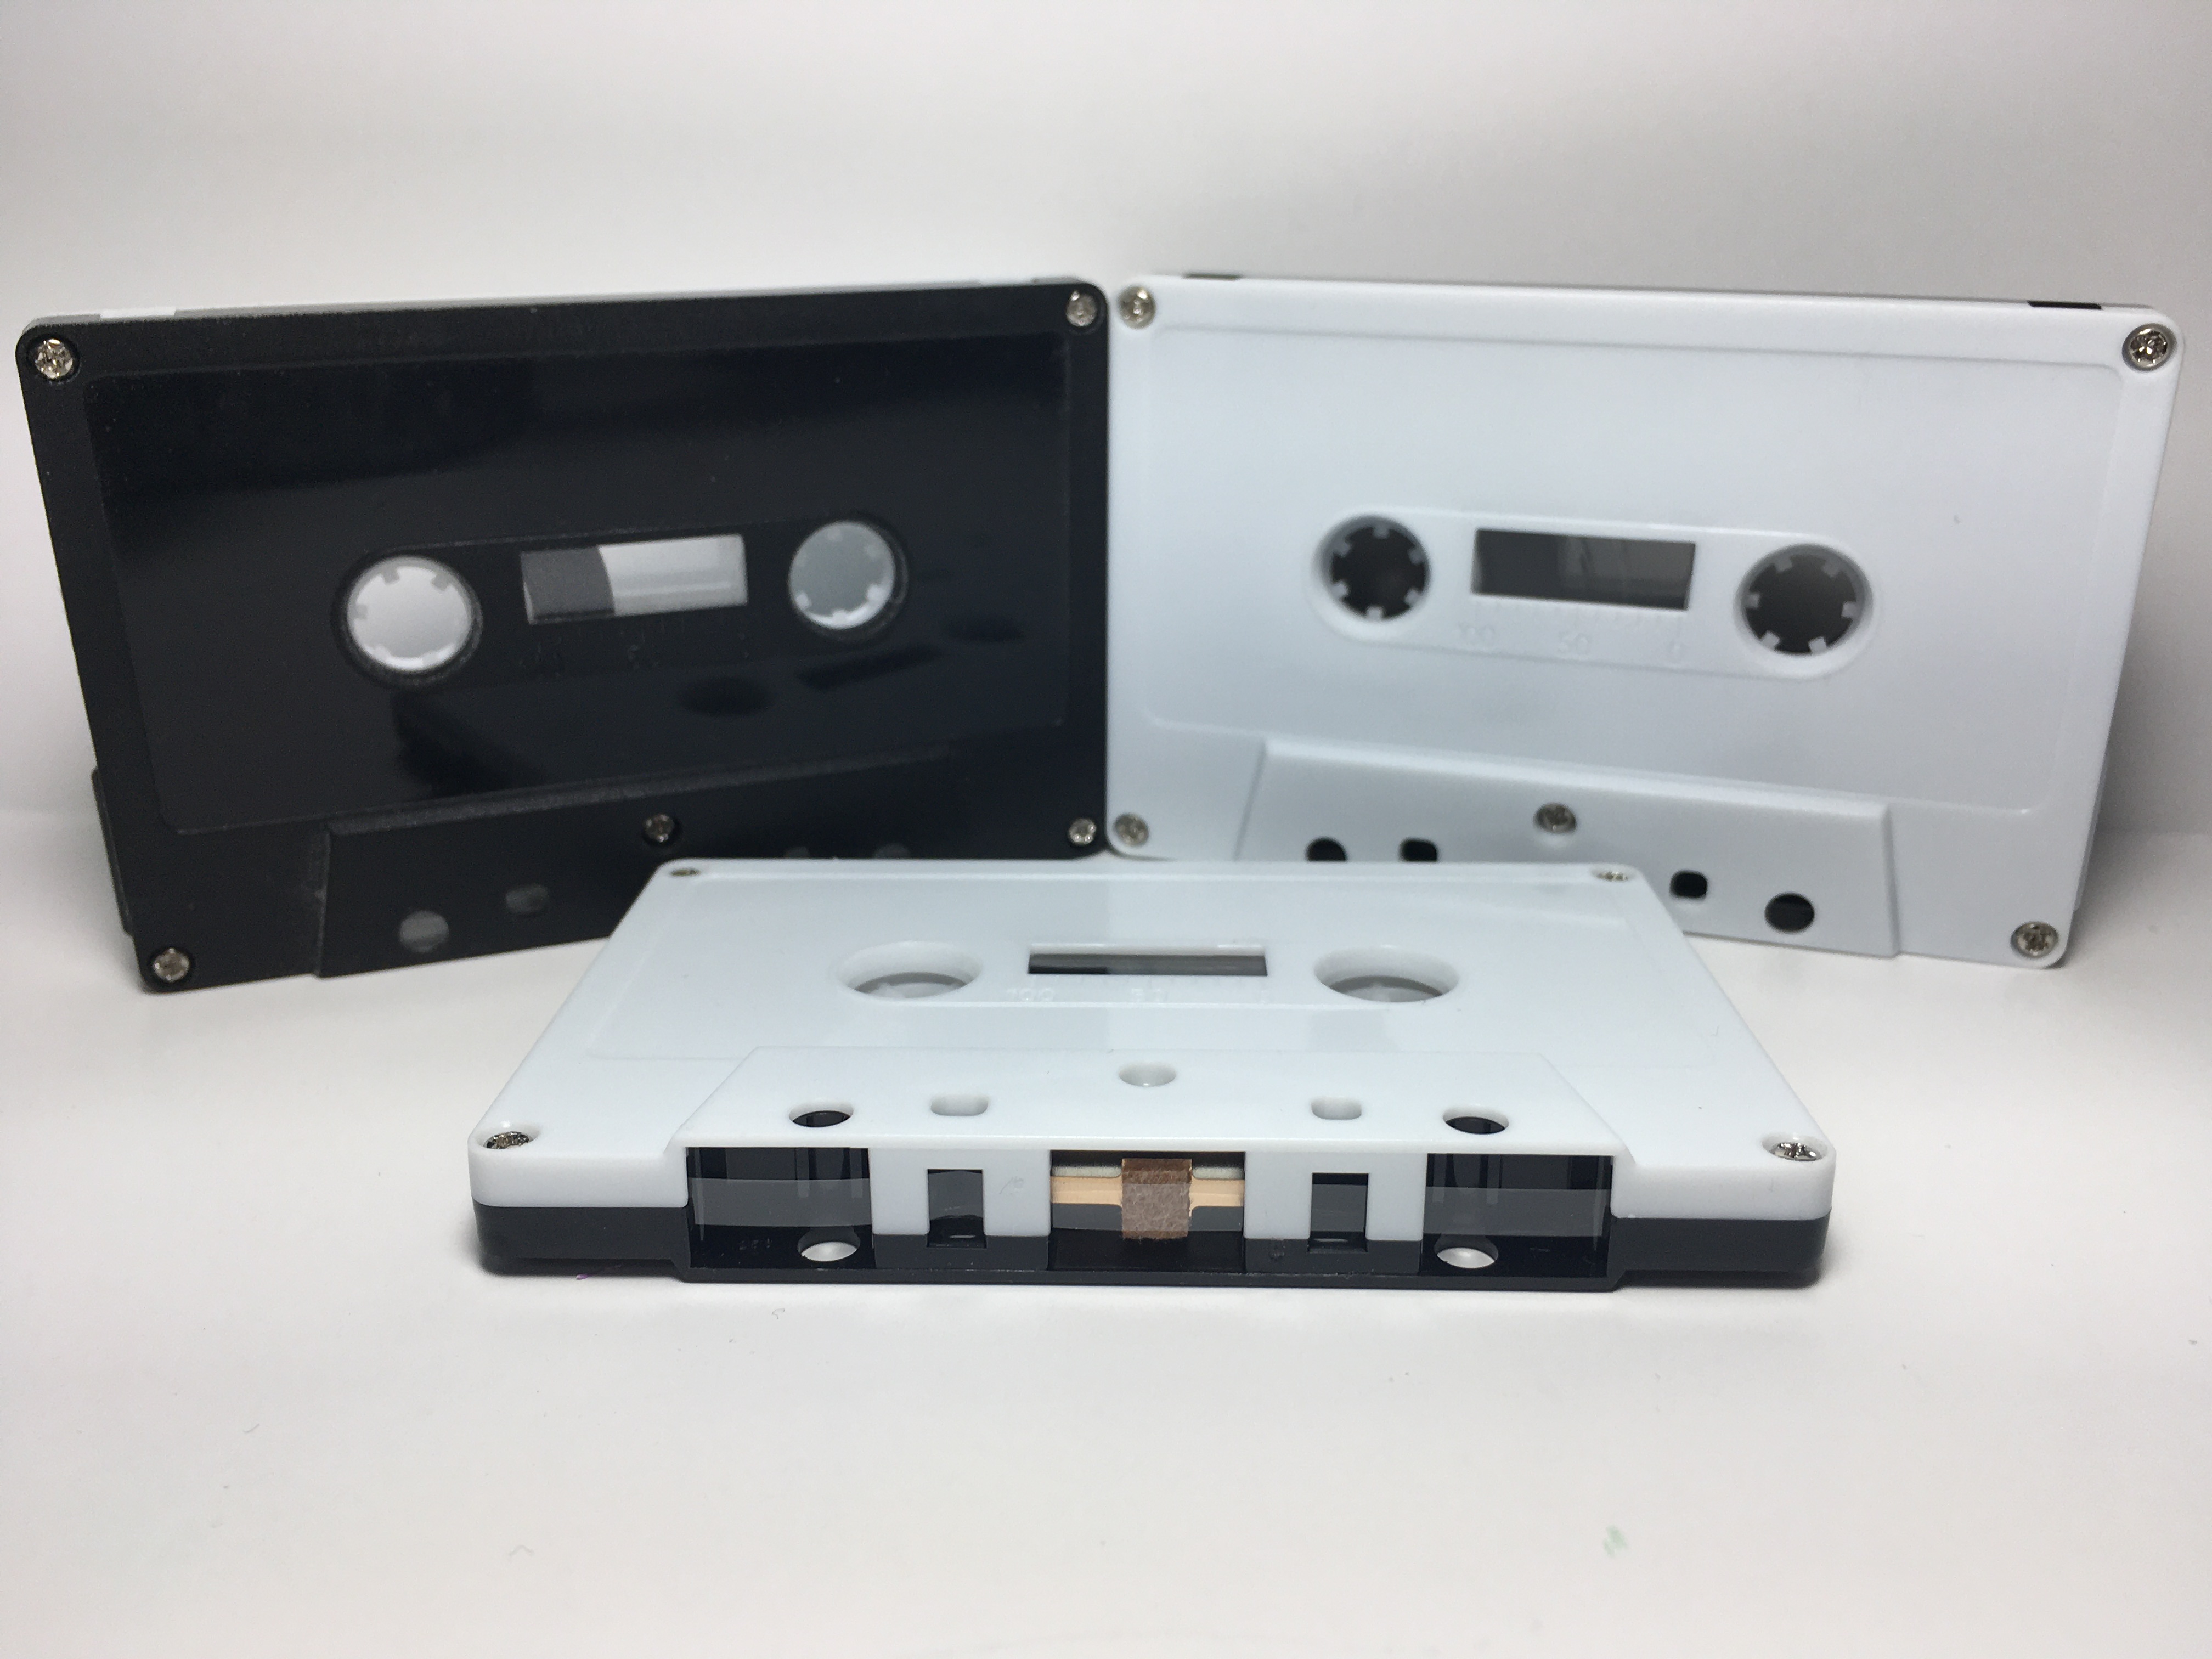 C-40 High Bias Black & White Cassettes 20 pack